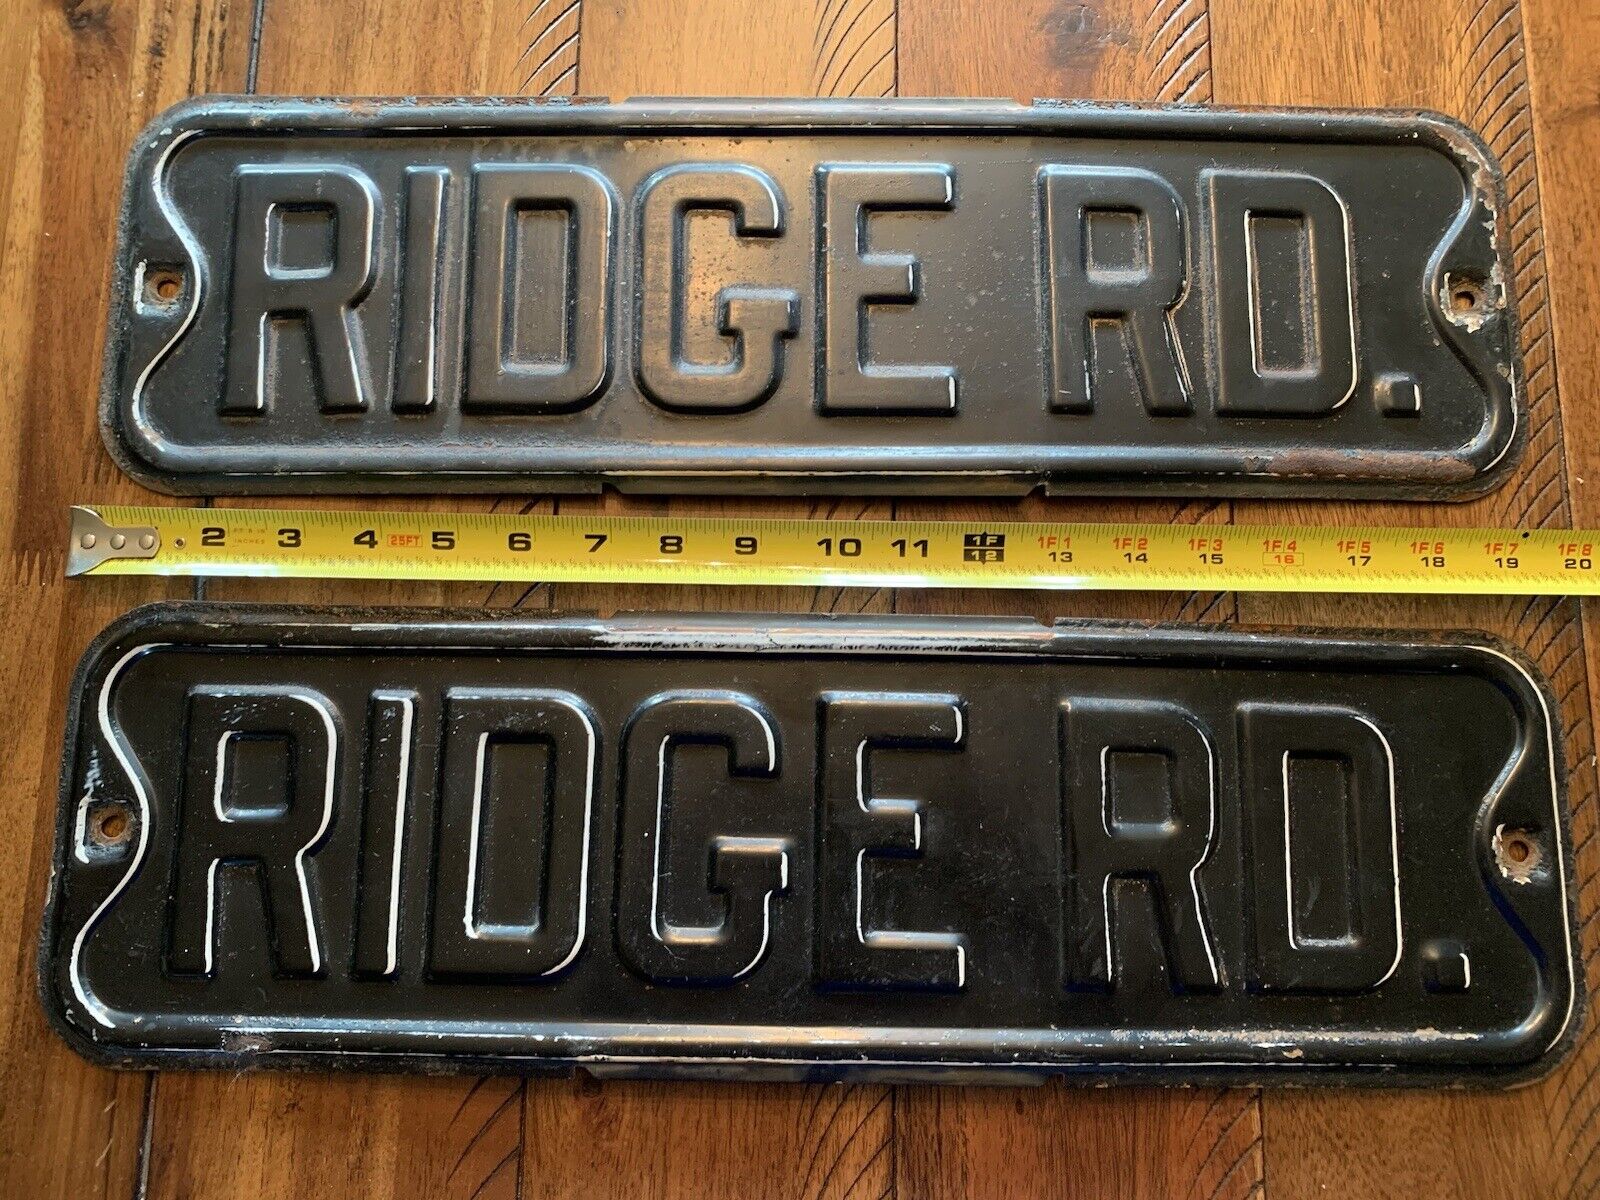 (2) Vintage Ridge Road Metal Street Signs, Embossed, Black, App. 19”, Read